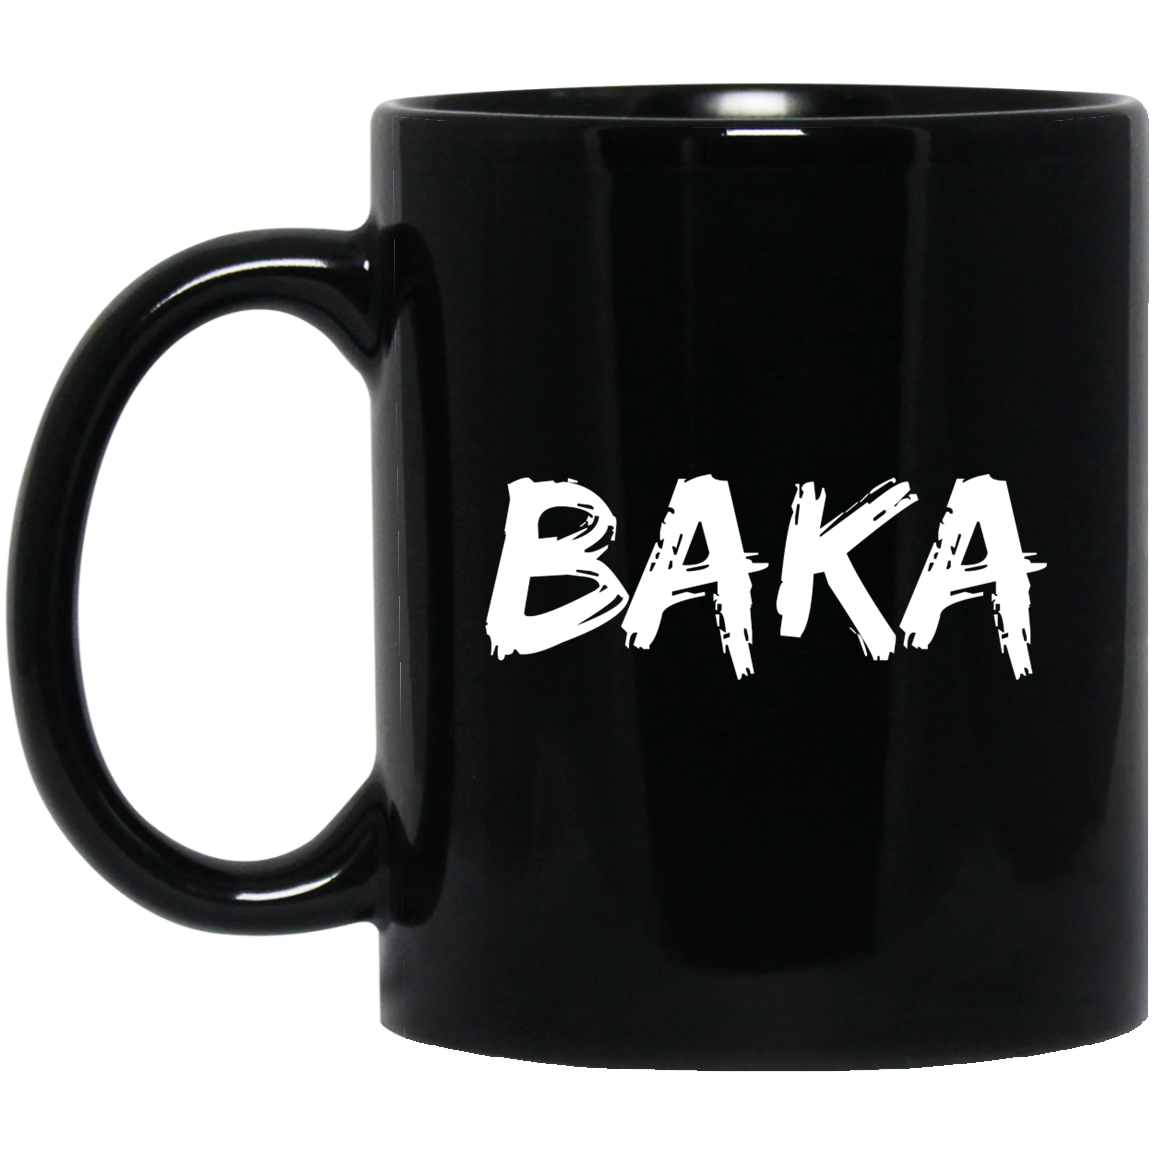 Baka "Fool" Anime Mug | Anime Gift Cup | Anime Coffee Mug | Anime Merch | Kawaii Mug 11 oz. Black Mug